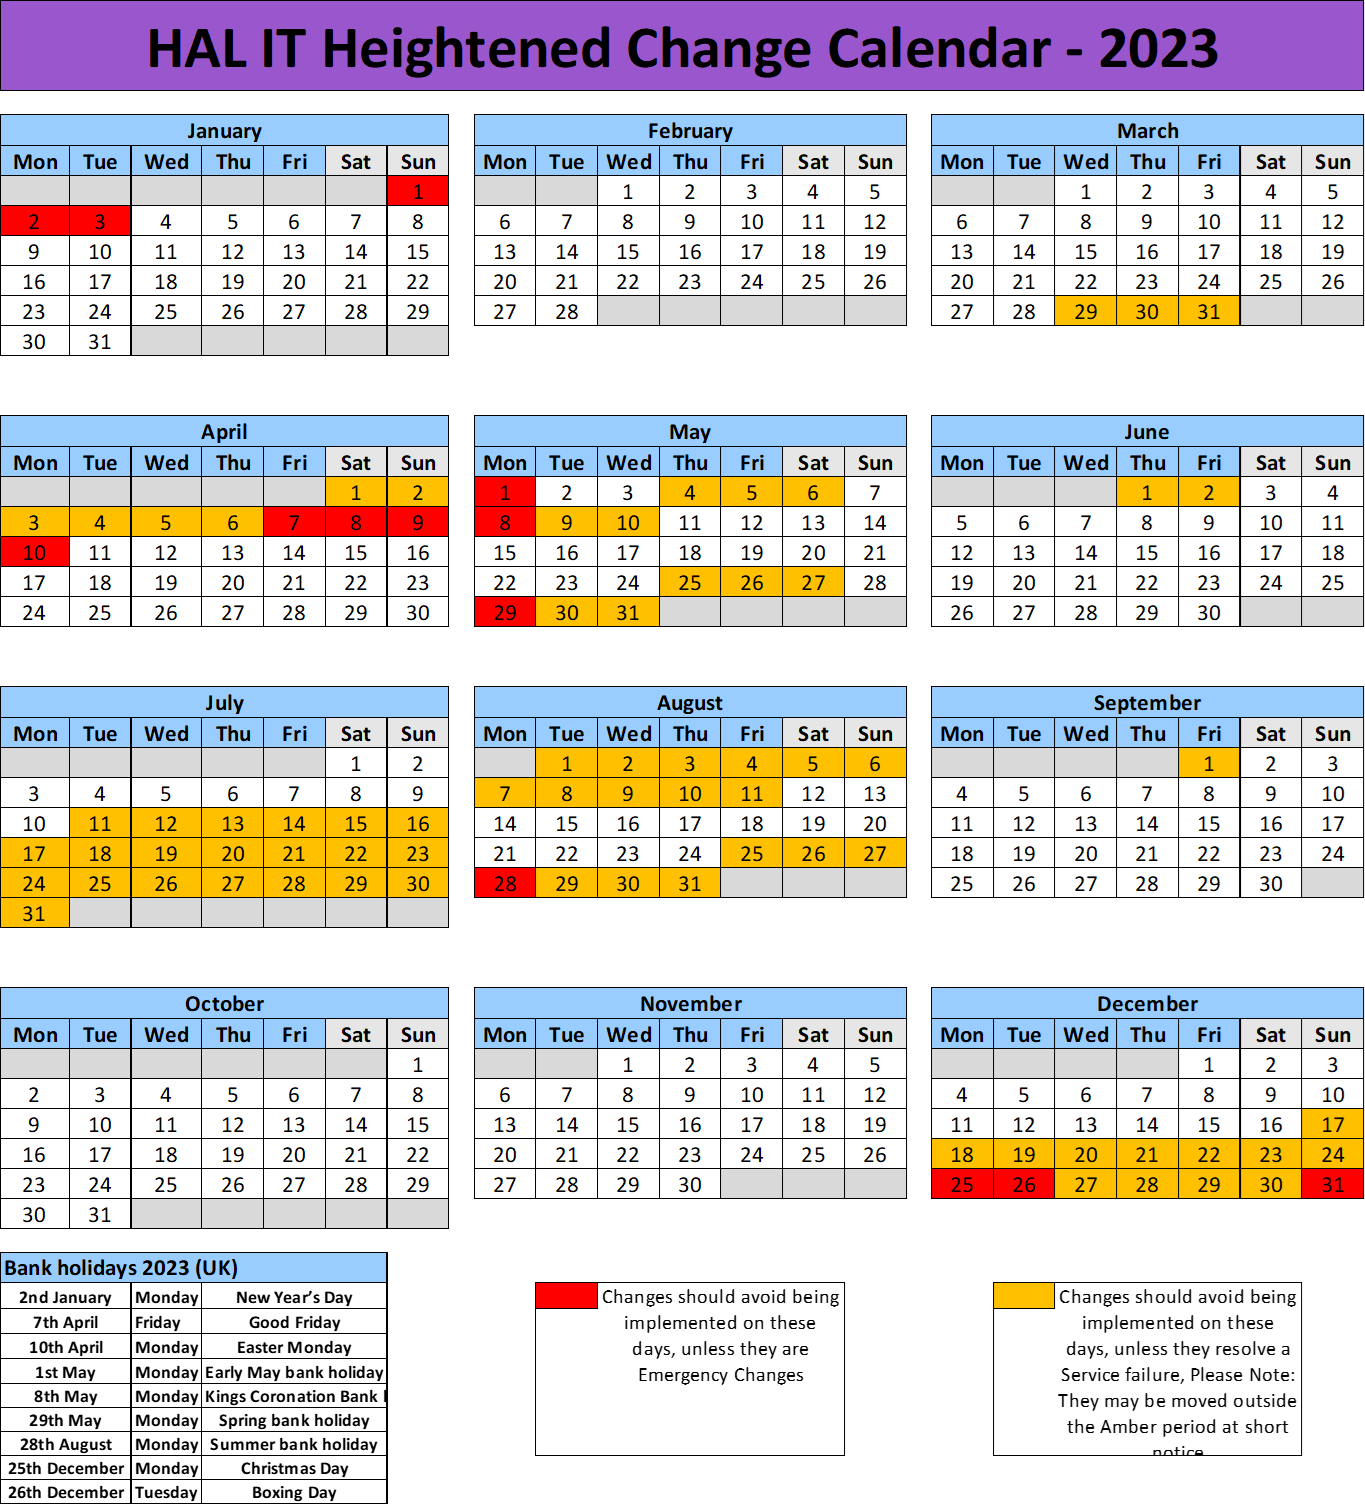 HCC Dates